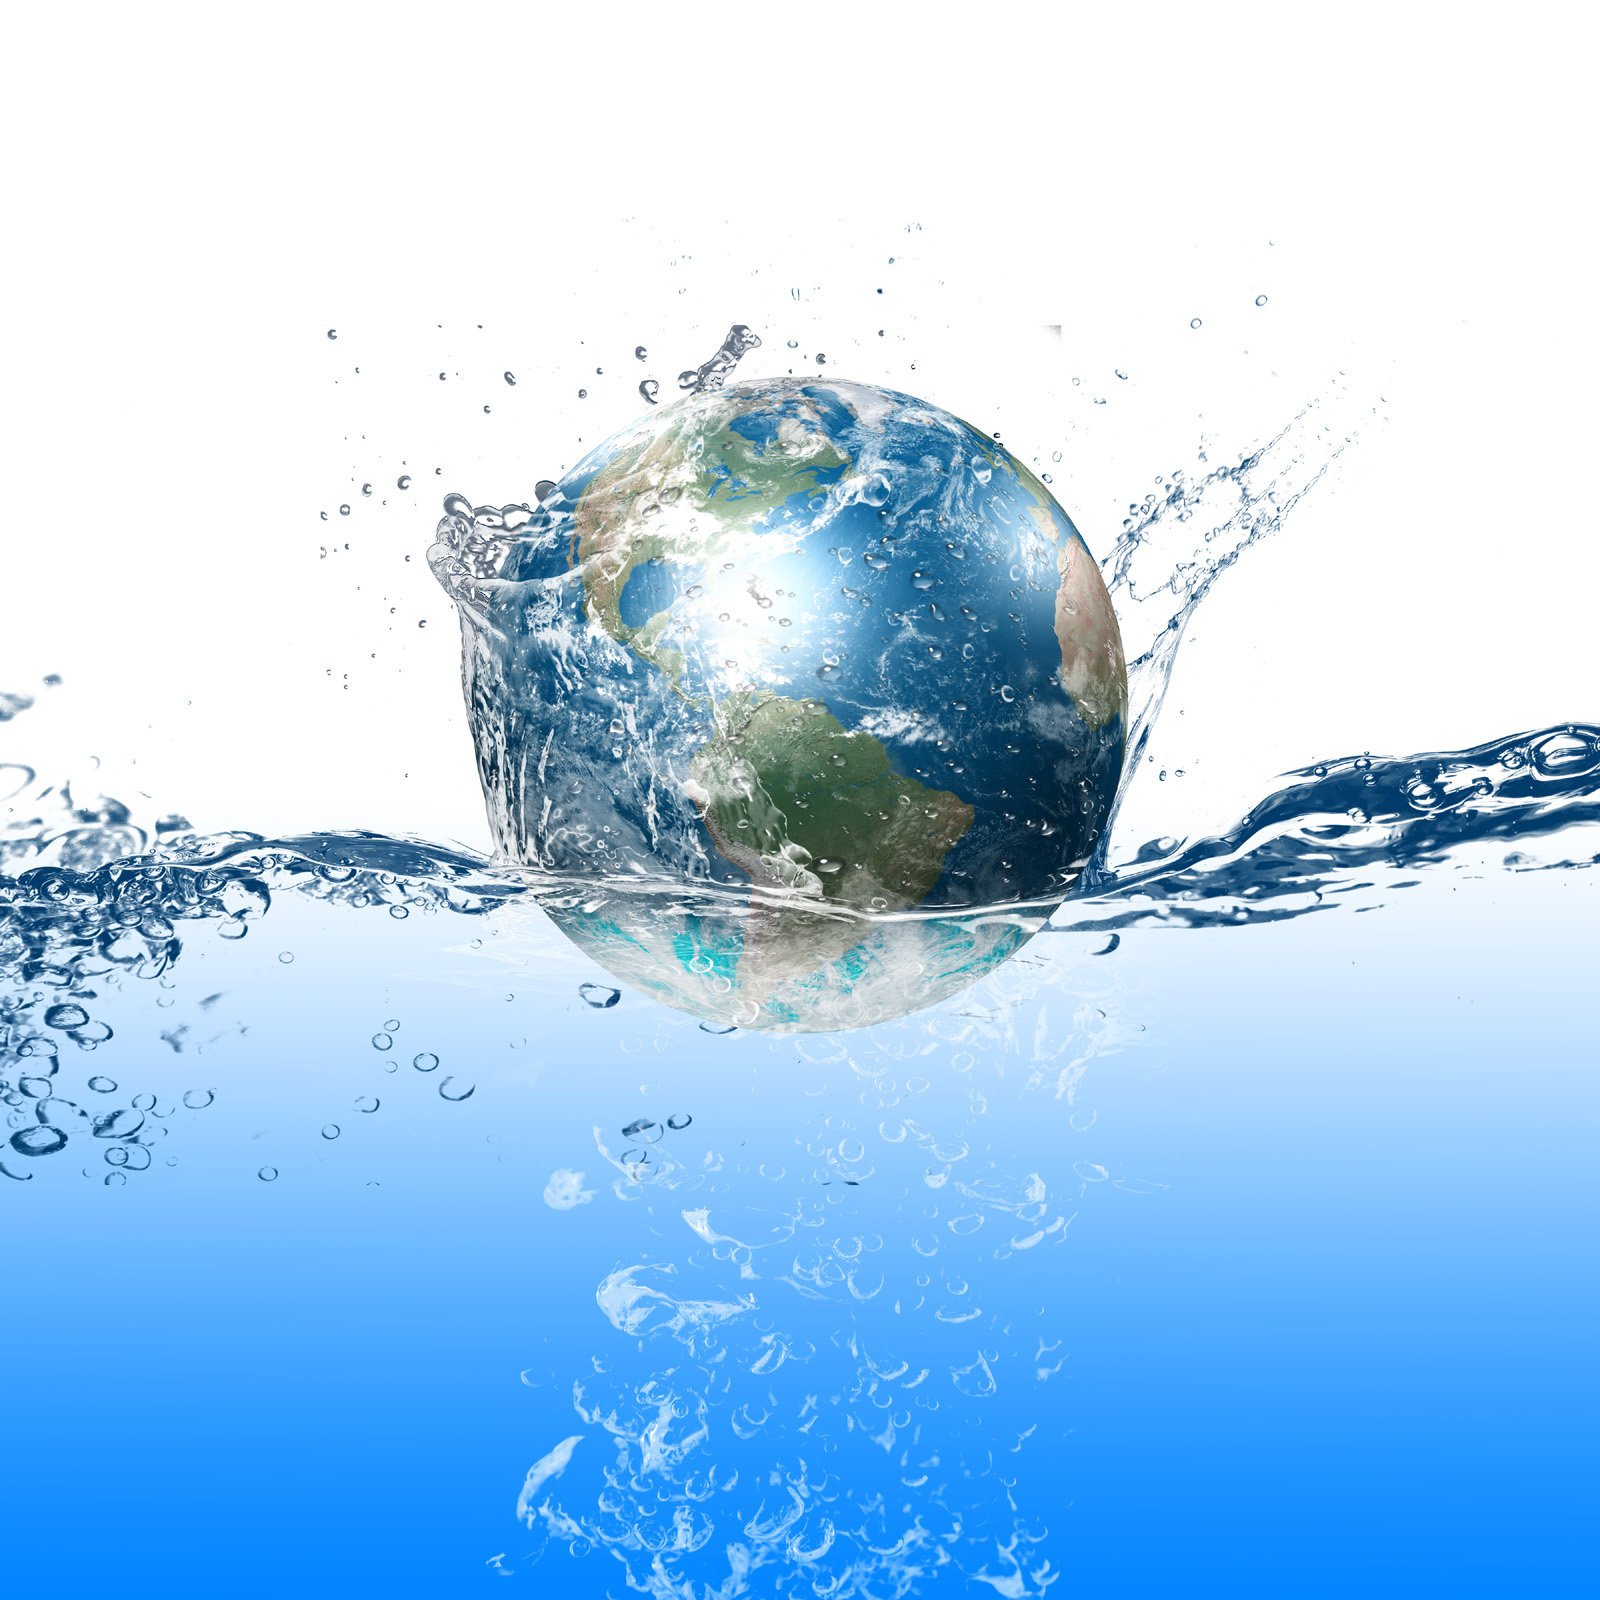 Всемирный день воды